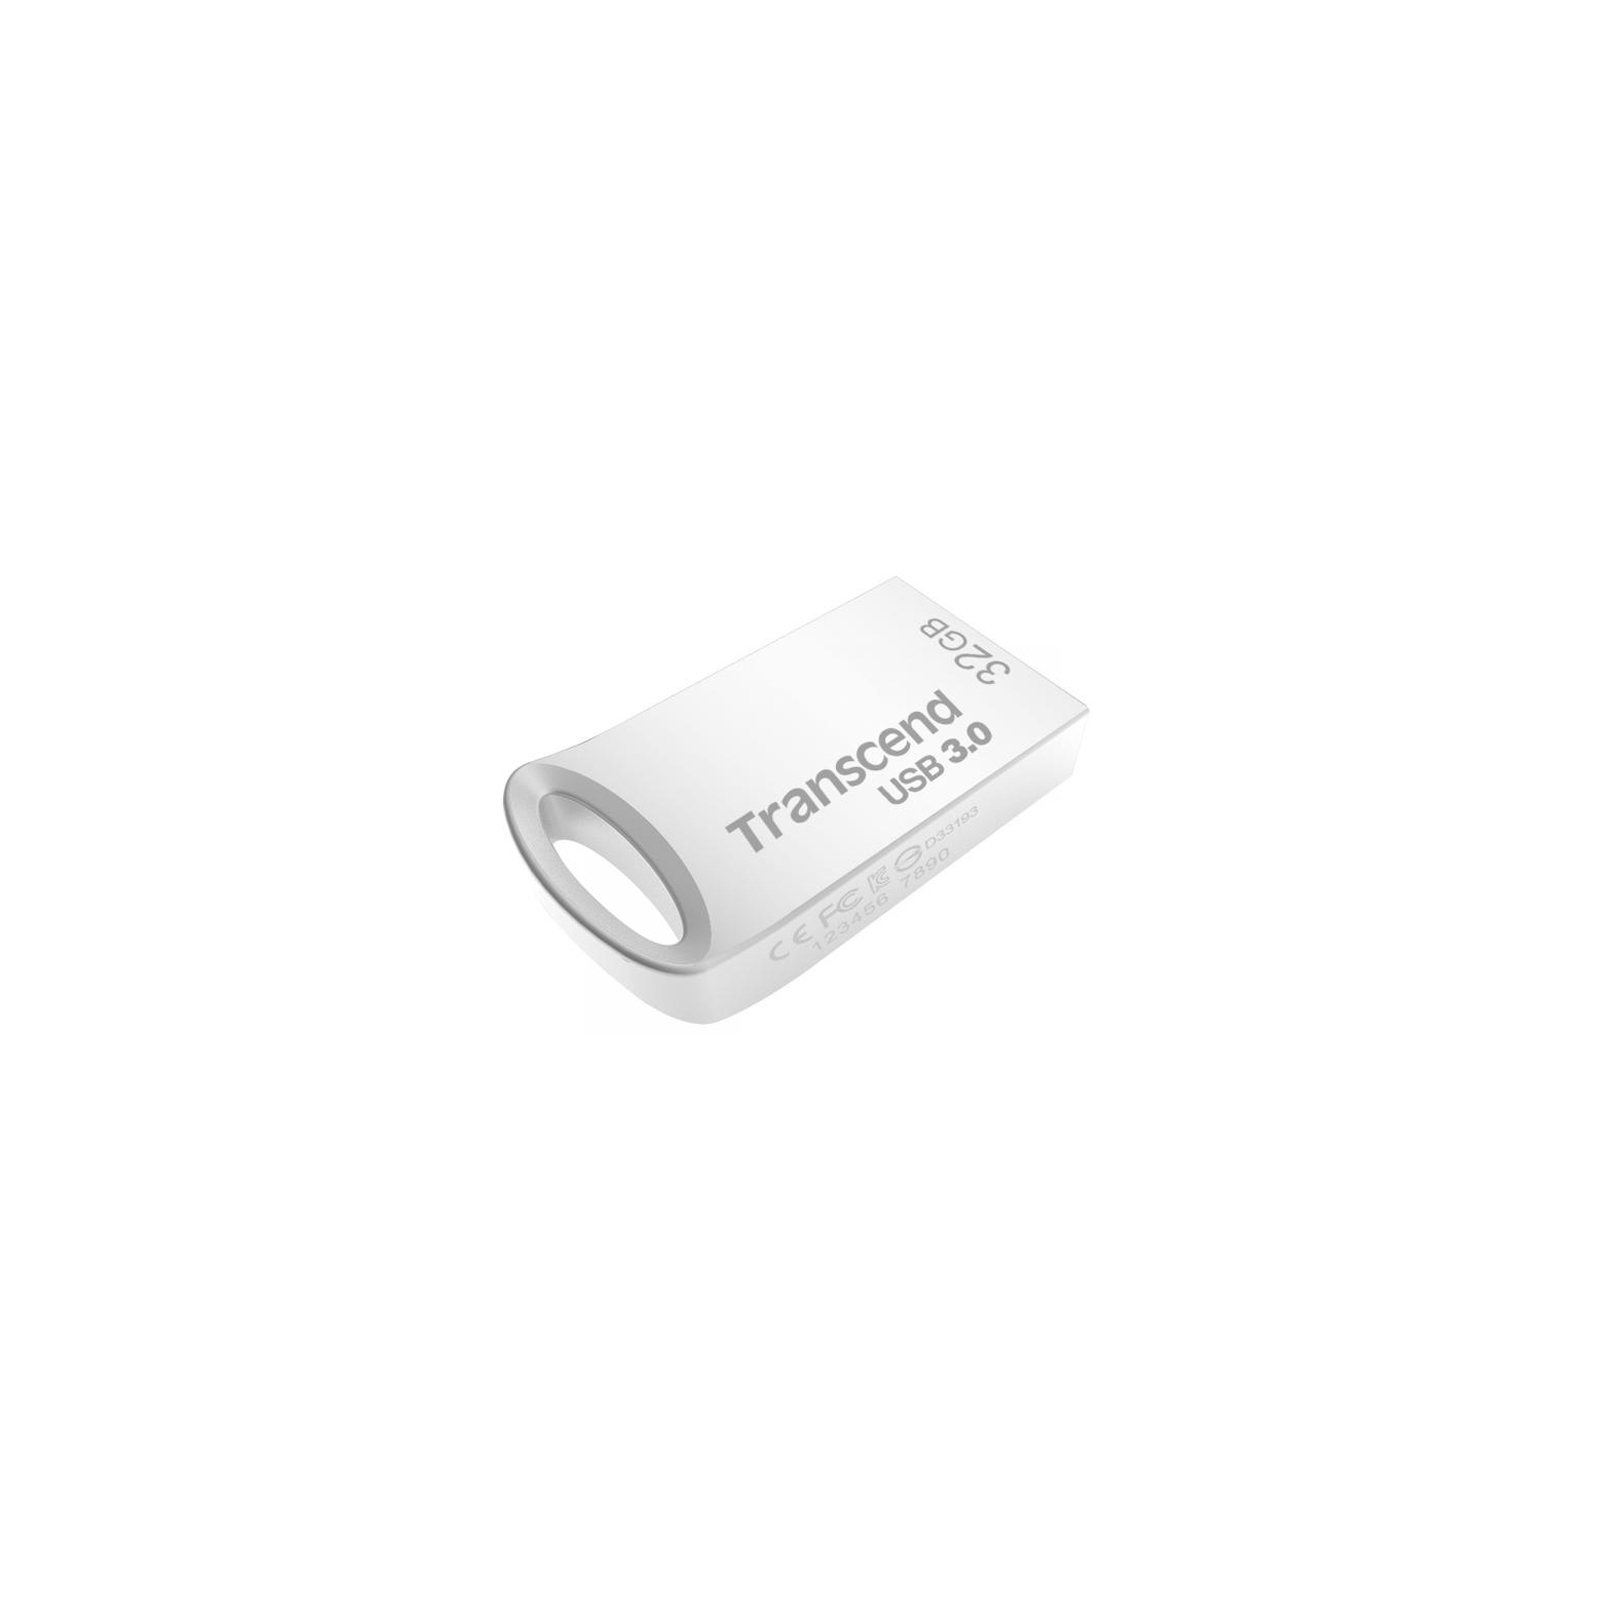 USB флеш накопичувач Transcend 128GB JetFlash 710 Silver USB 3.0 (TS128GJF710S)